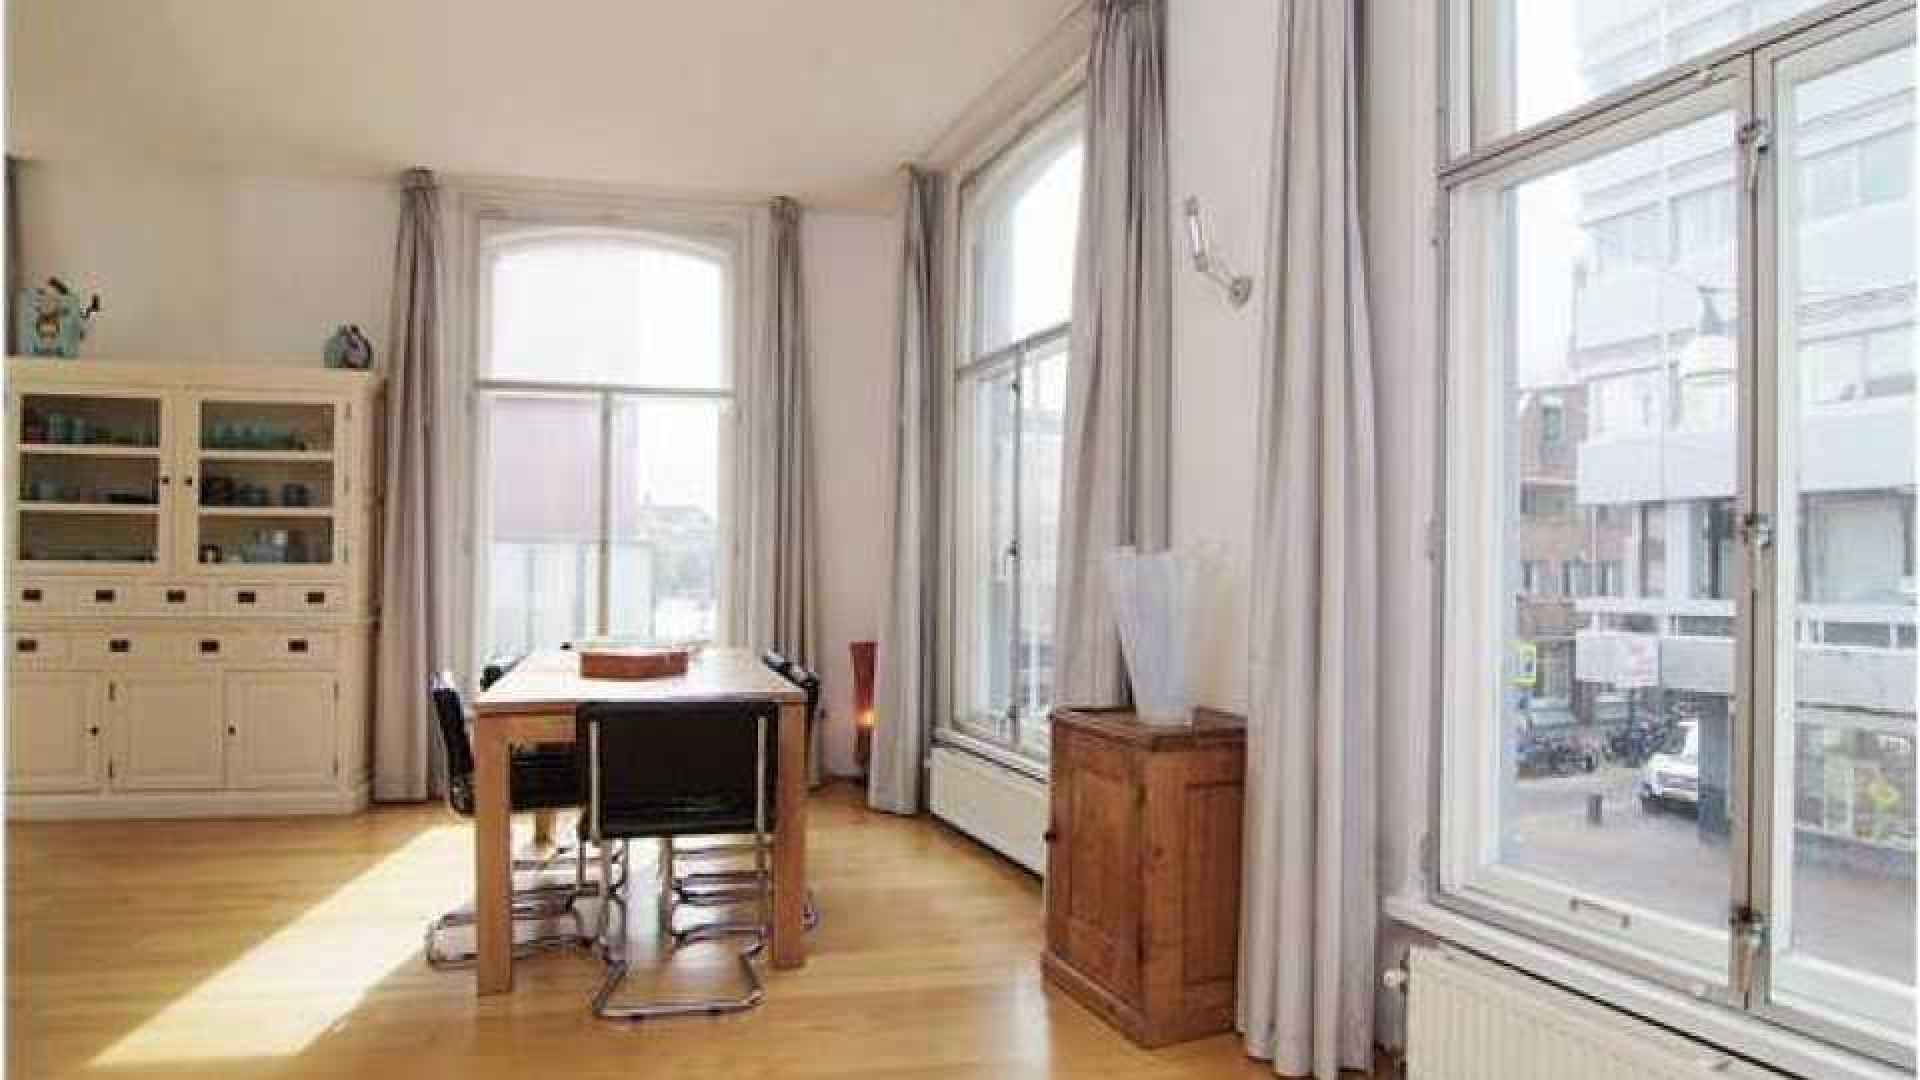 Charles Groenhuijsen huurt leuk appartement in centrum van Utrecht. Zie foto's 4